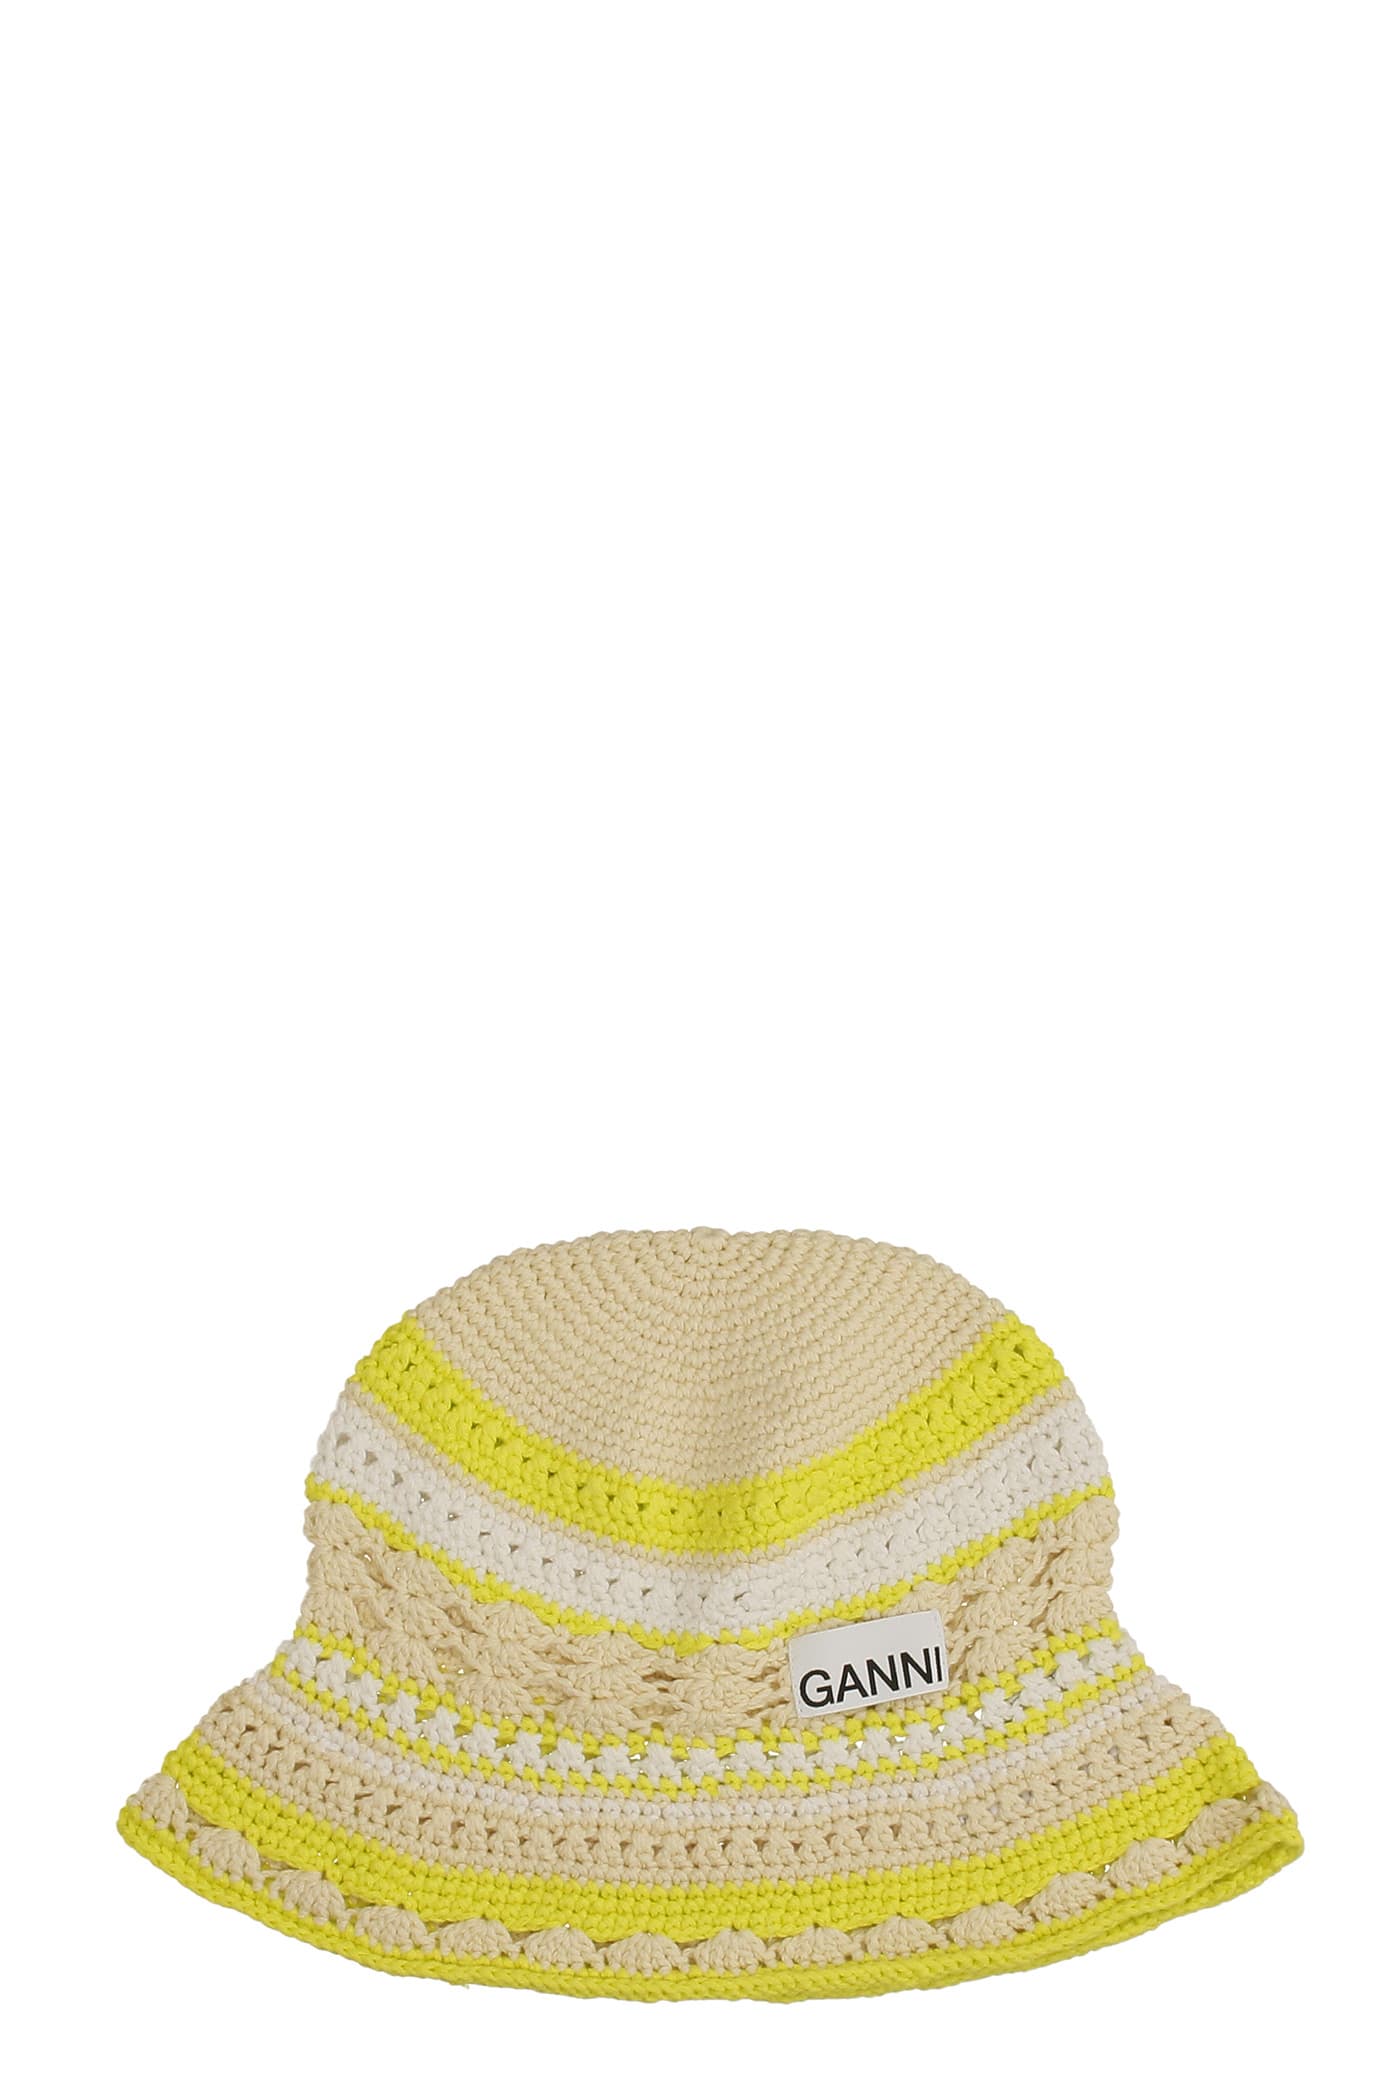 Ganni Hats In White Cotton